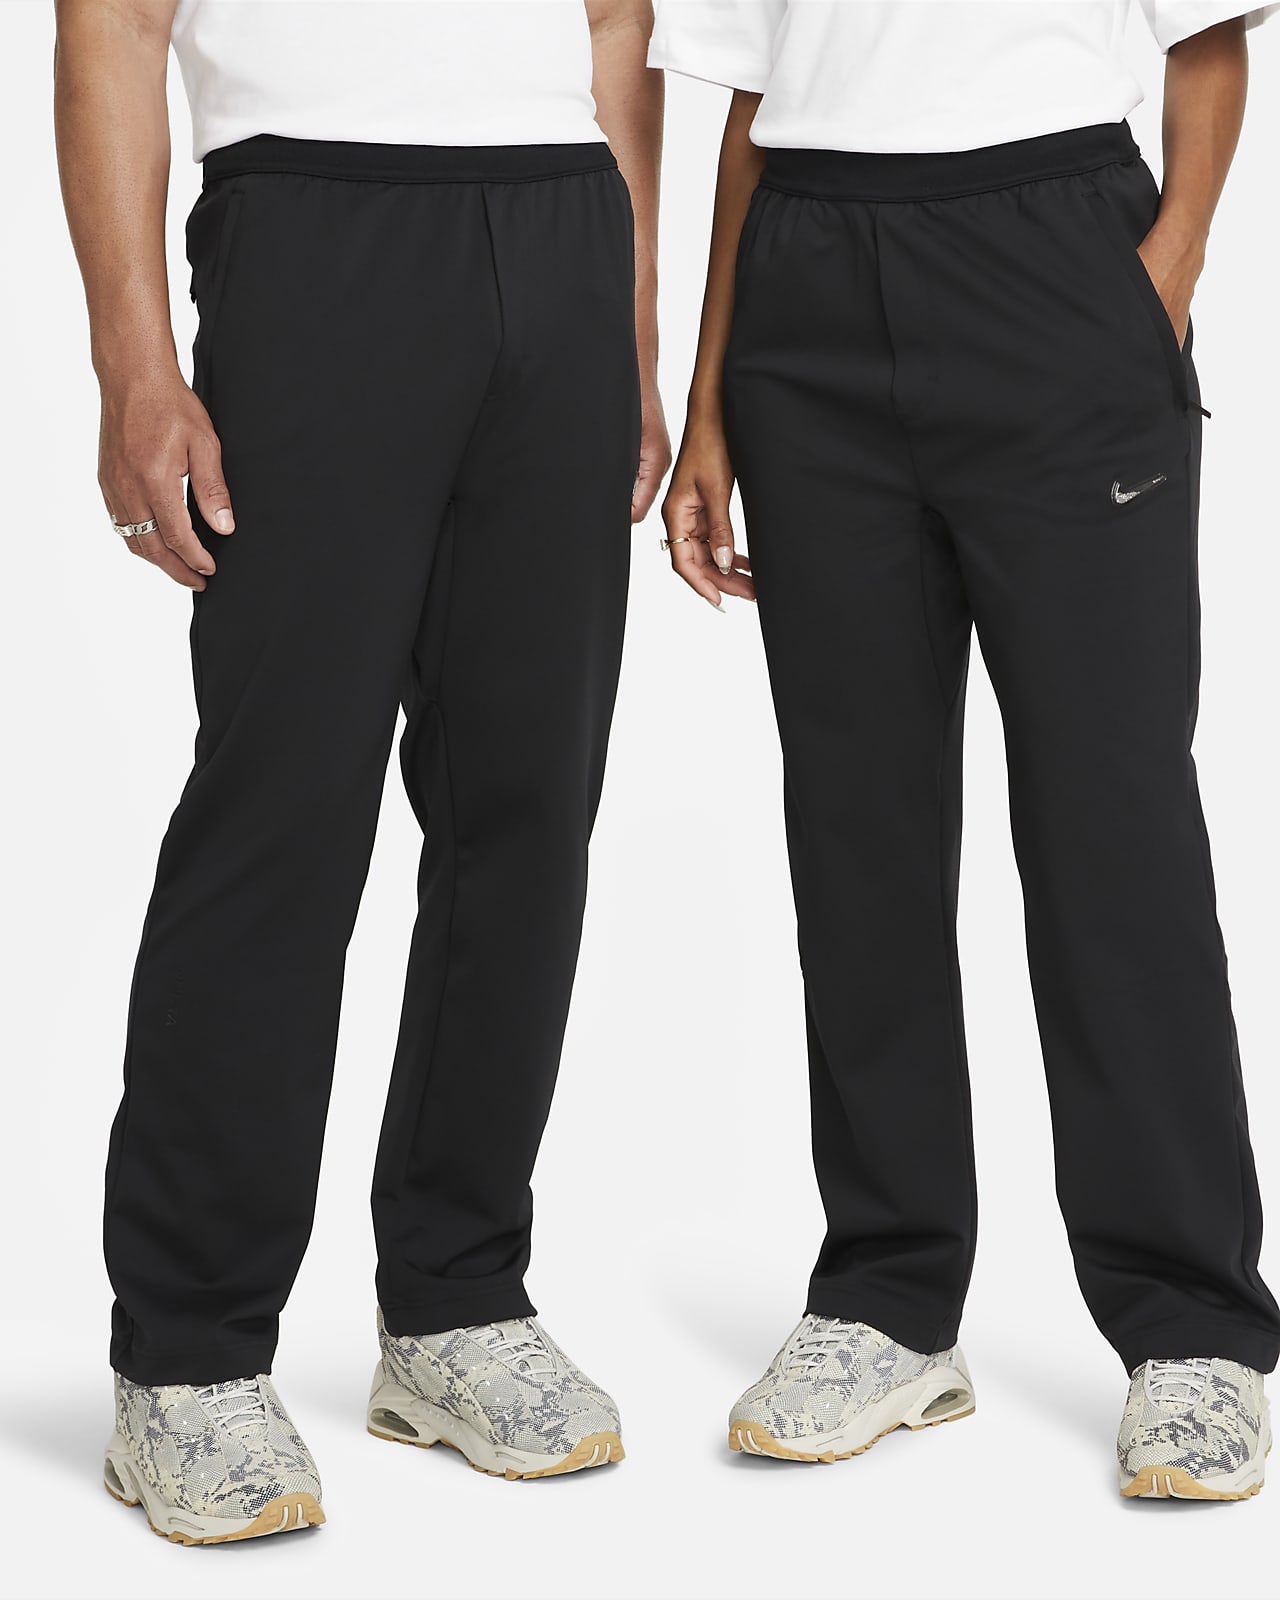 Men's Knit Pants. Nike.com